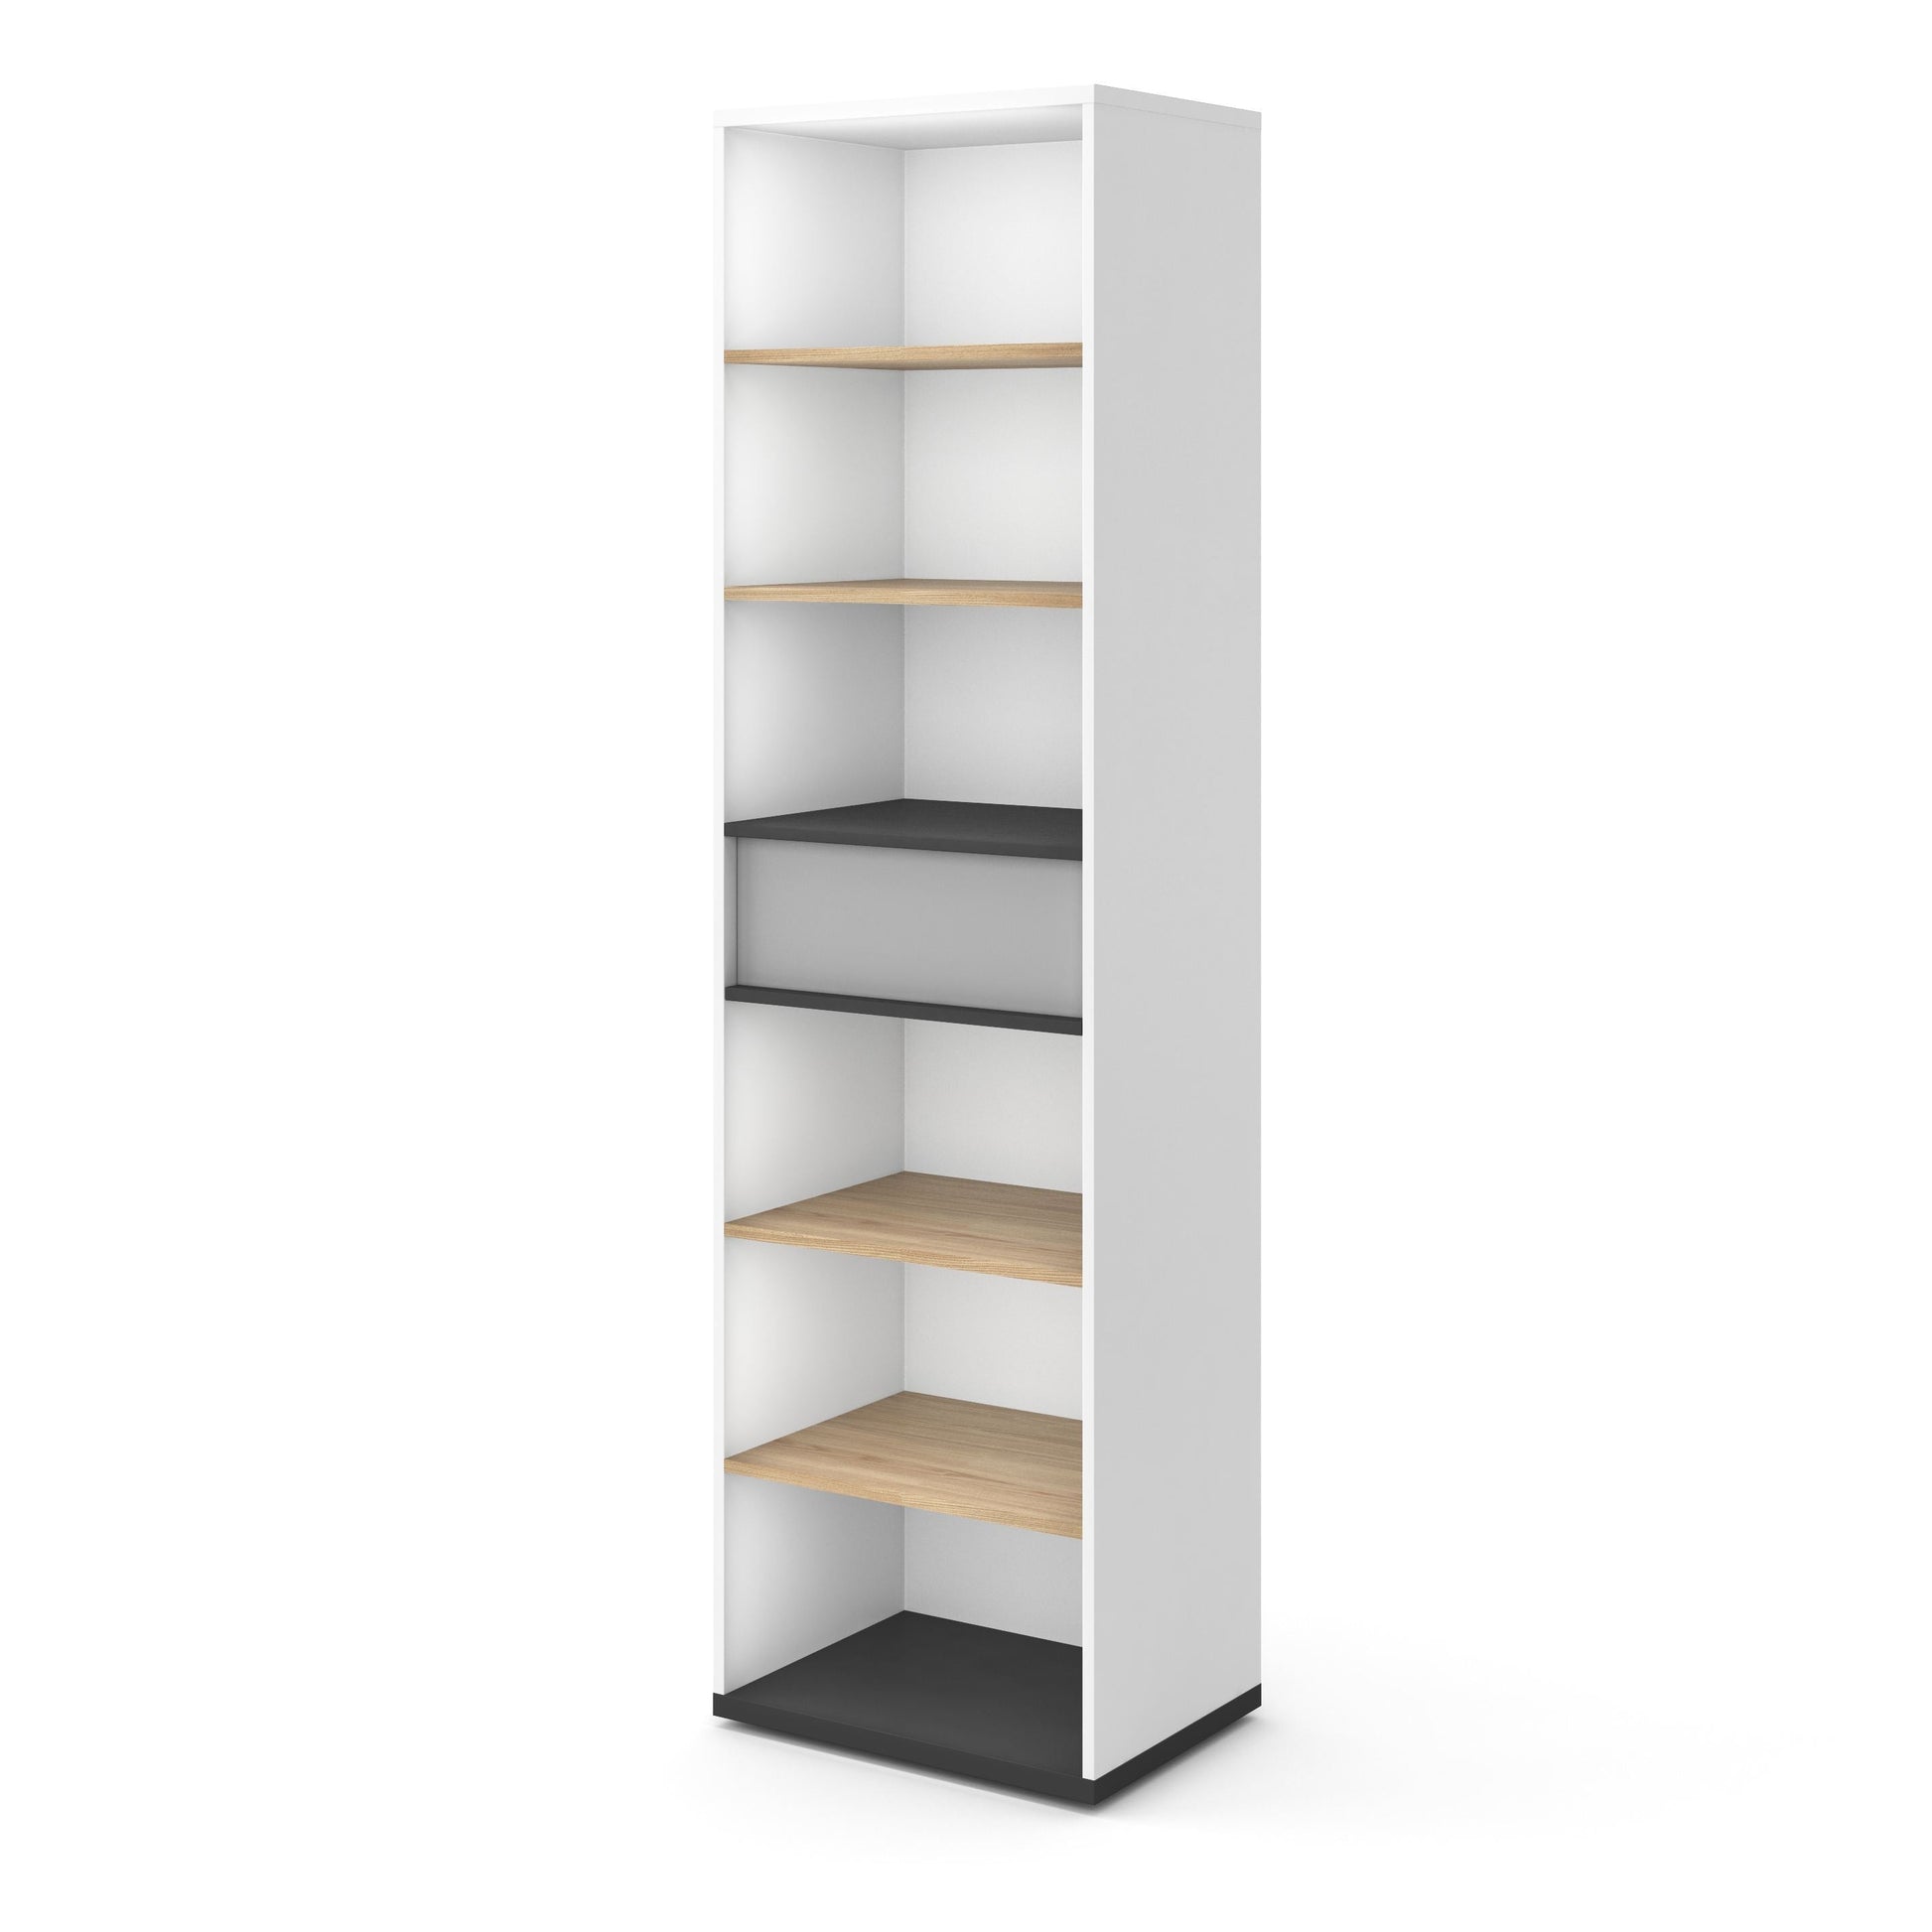 Imola IM-04 Bookcase - £147.6 - Kids Bookcase 